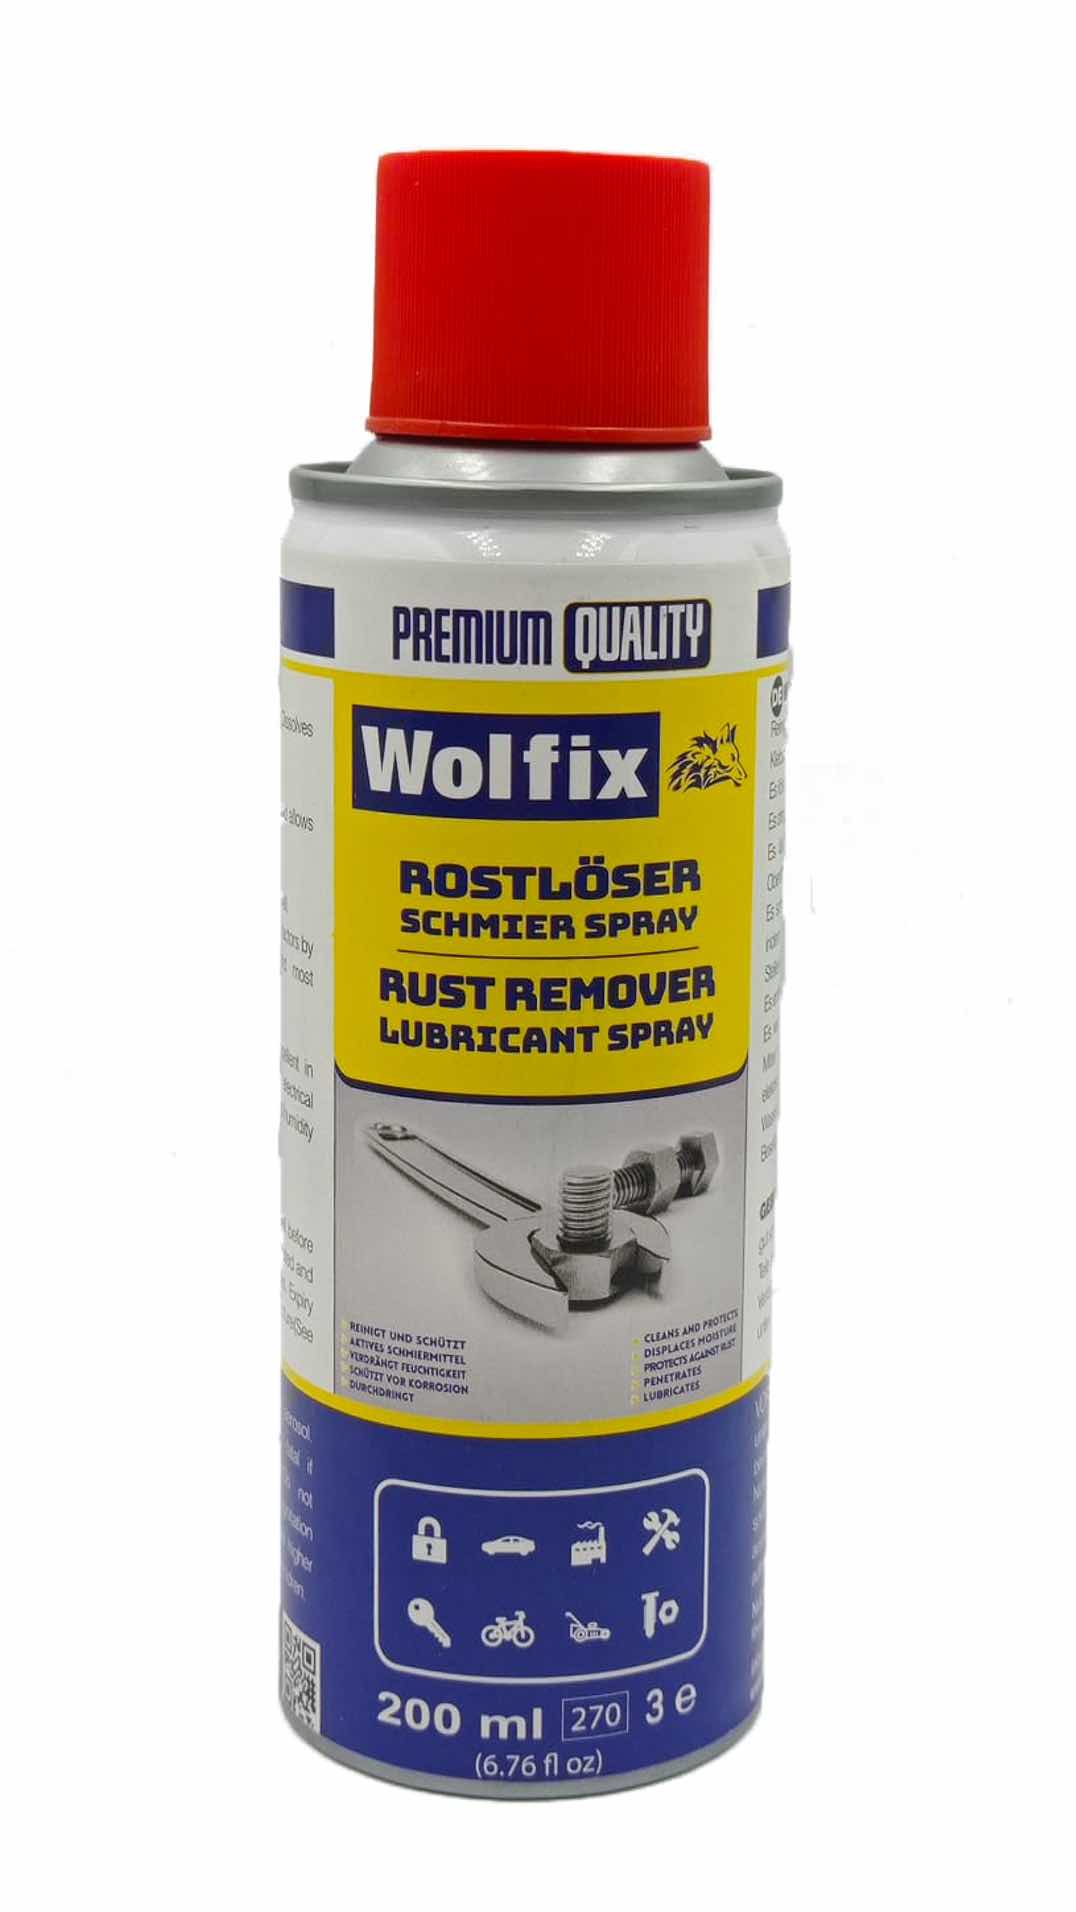 Rostlöser Schmier Spray 200 ml - Premium Quality